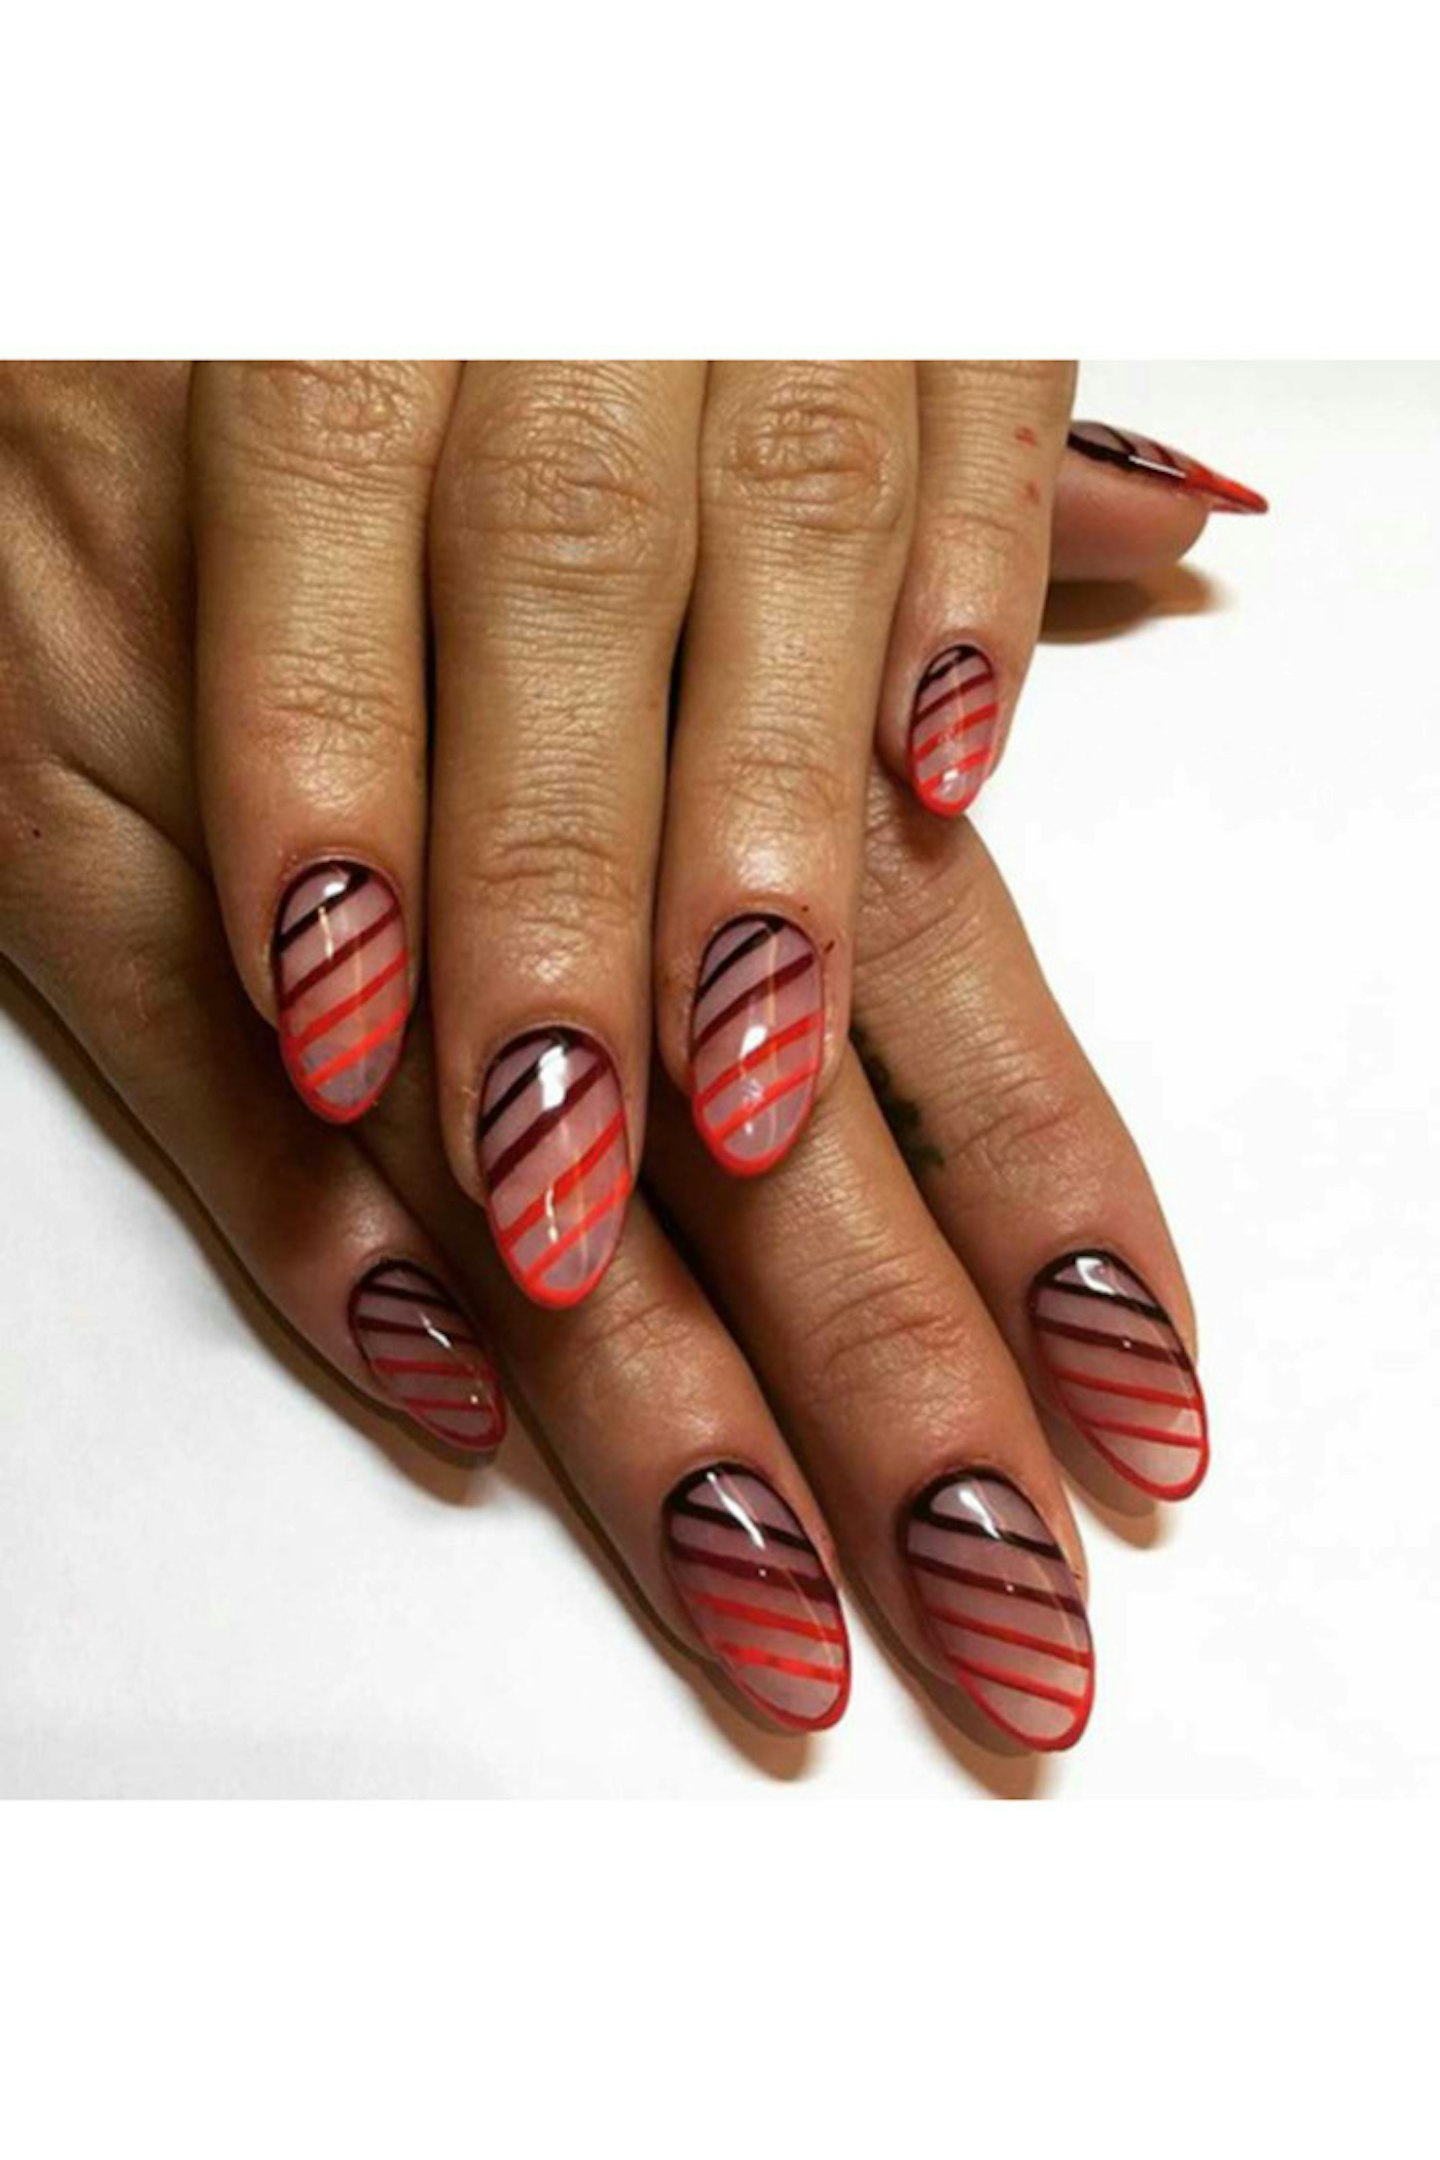 @lilyallen 'New nails by @eichi_matsunaga'